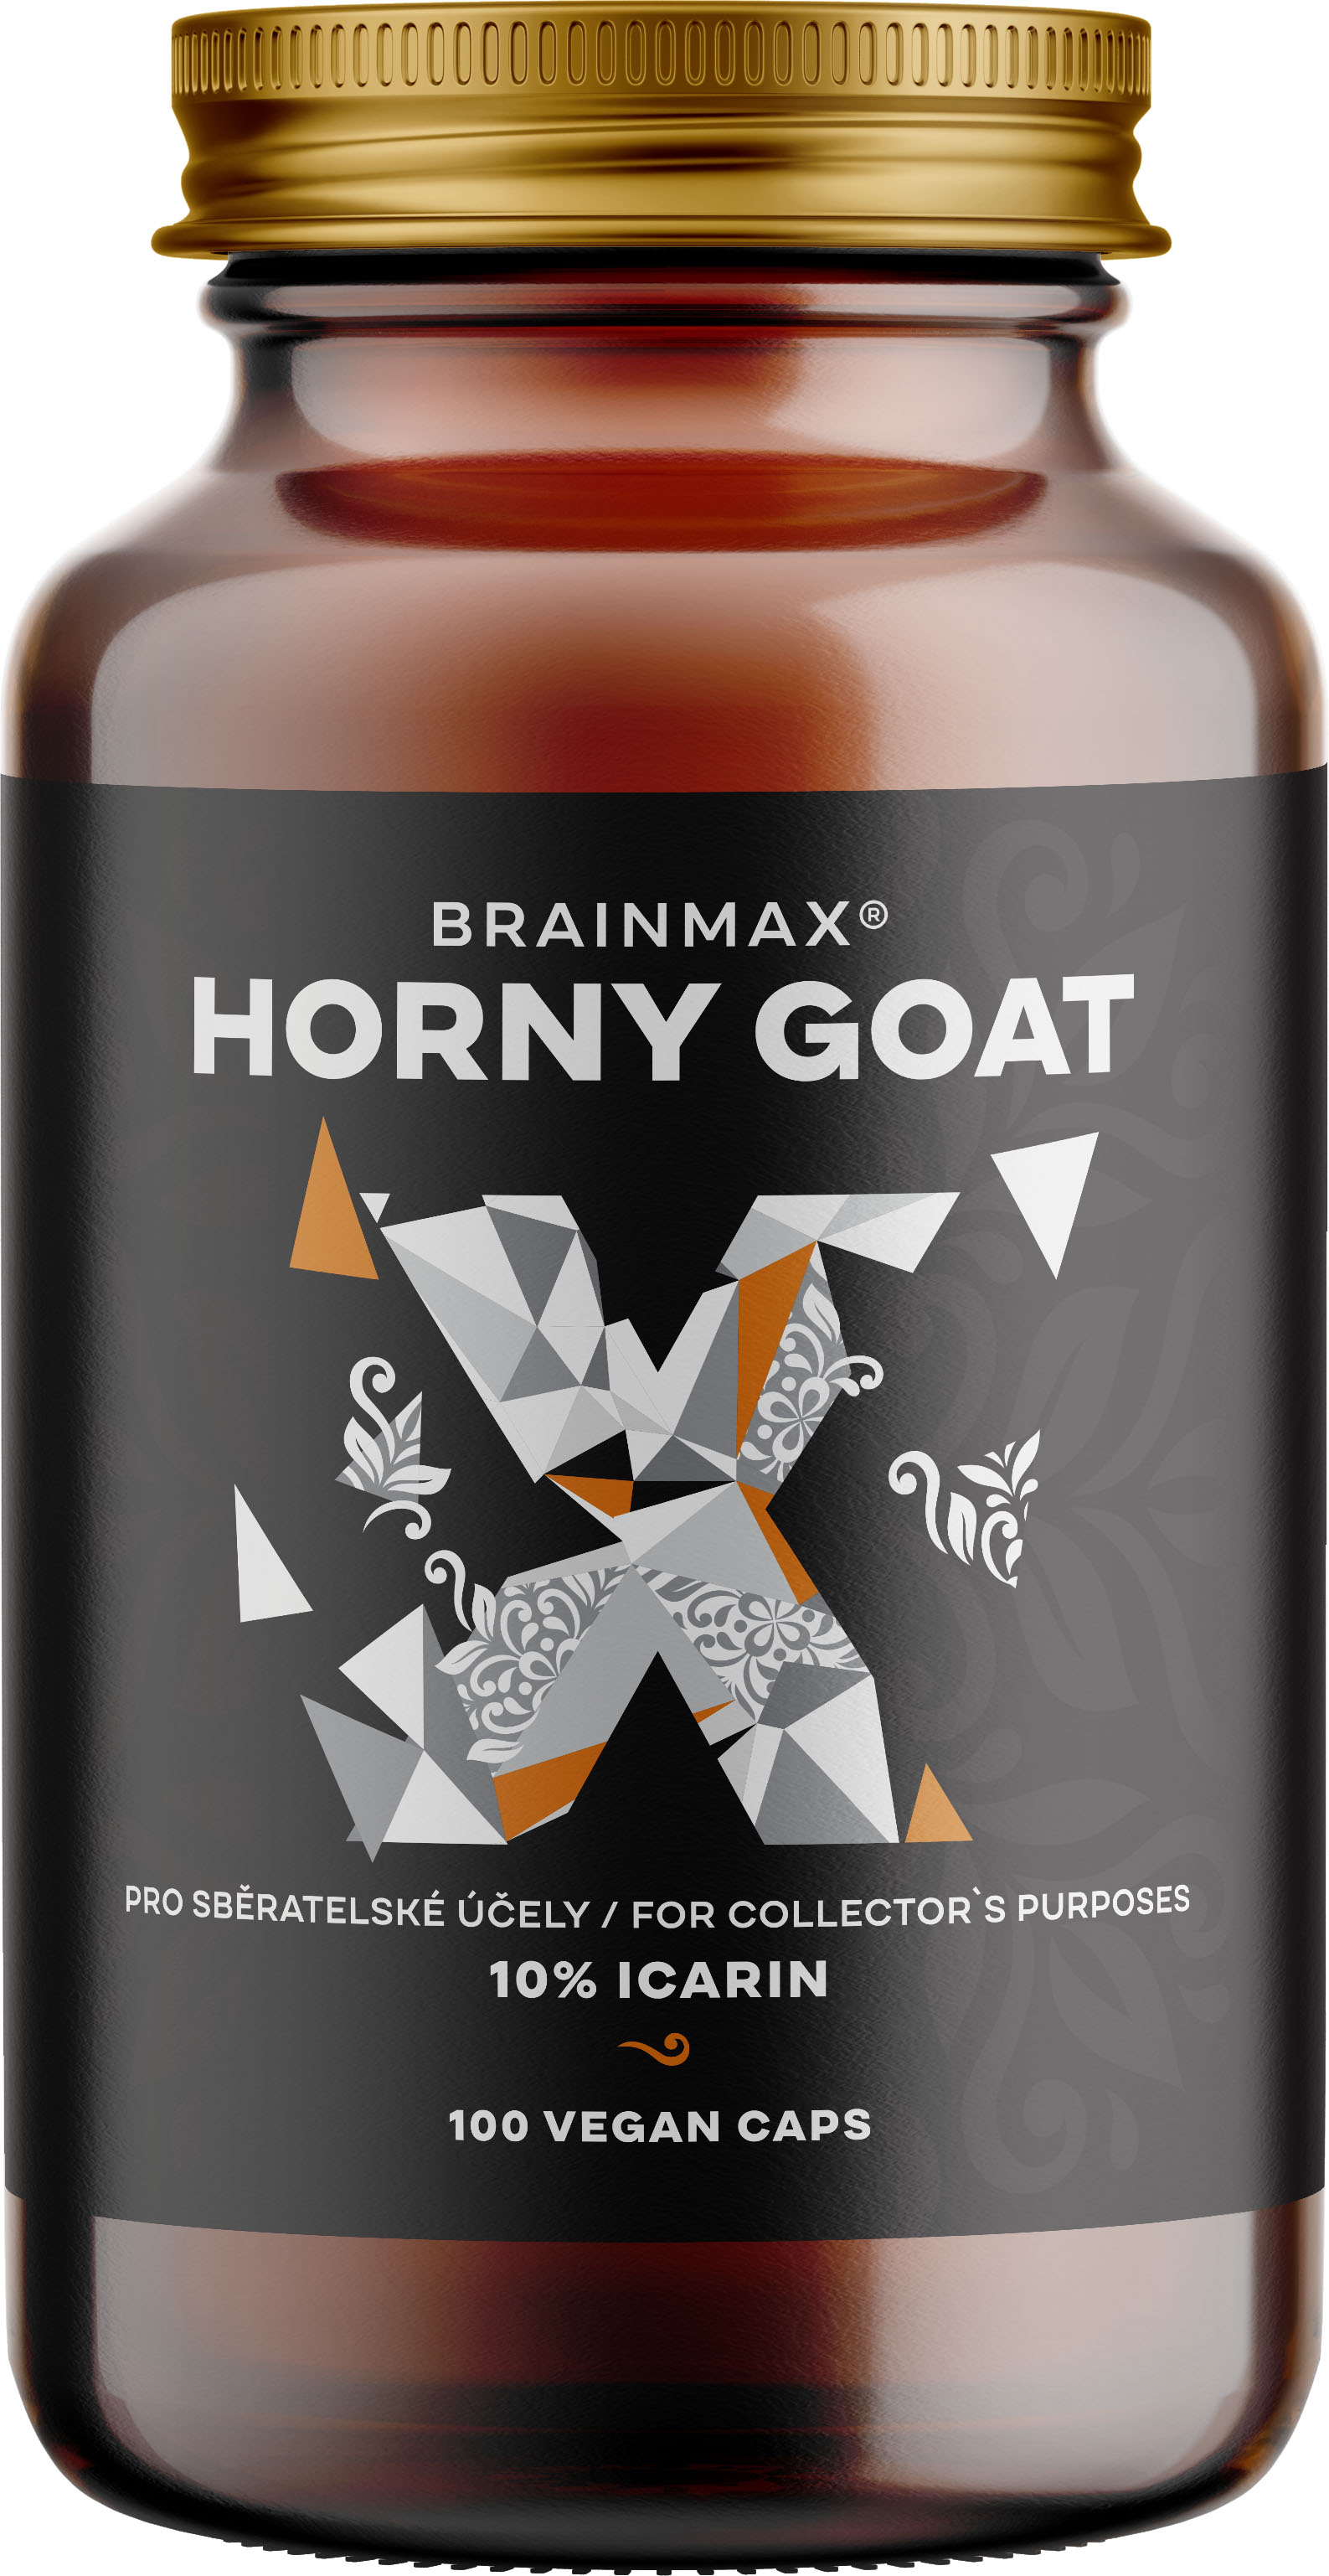 BrainMax Horny Goat extrakt 10% ikarinu, pro sběratelské účely, 500 mg, 100 rostlinných kapslí Extrémně silný extrakt pro podporu test0steronu a libida